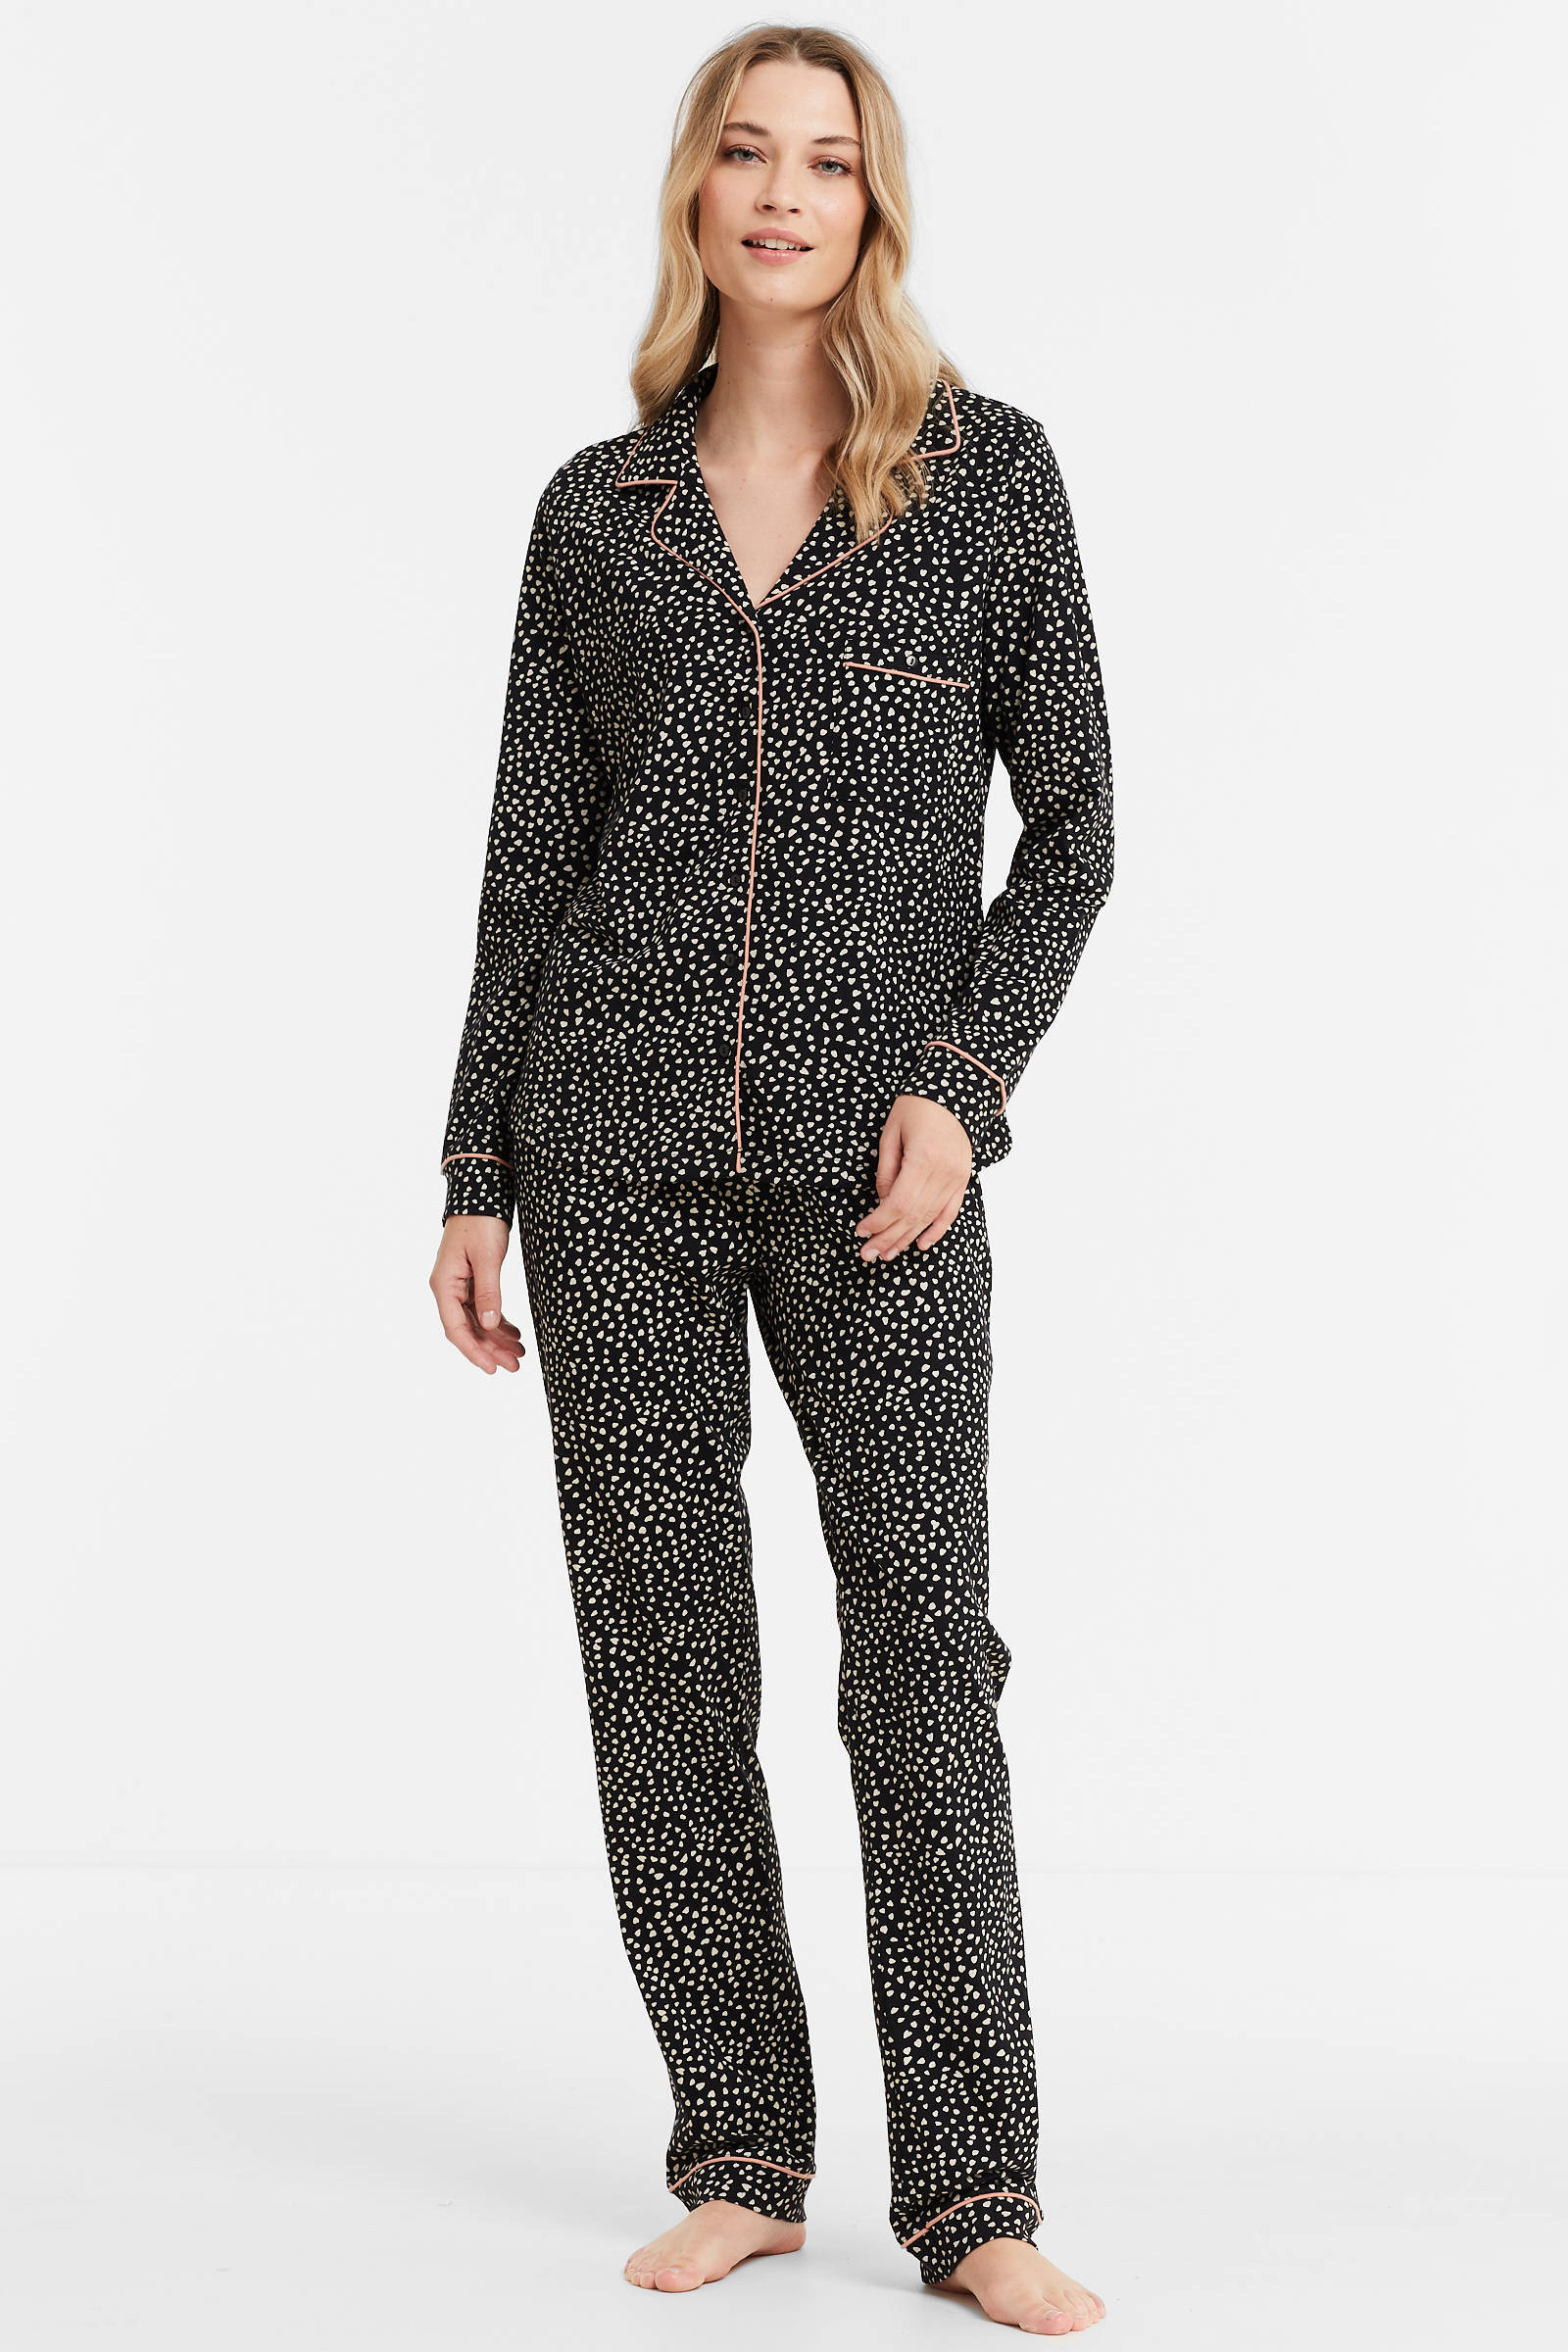 Kleding Dameskleding Pyjamas & Badjassen Pyjamashorts & Pyjamabroeken Iconen Zwarte Dames Pyjama Broek 